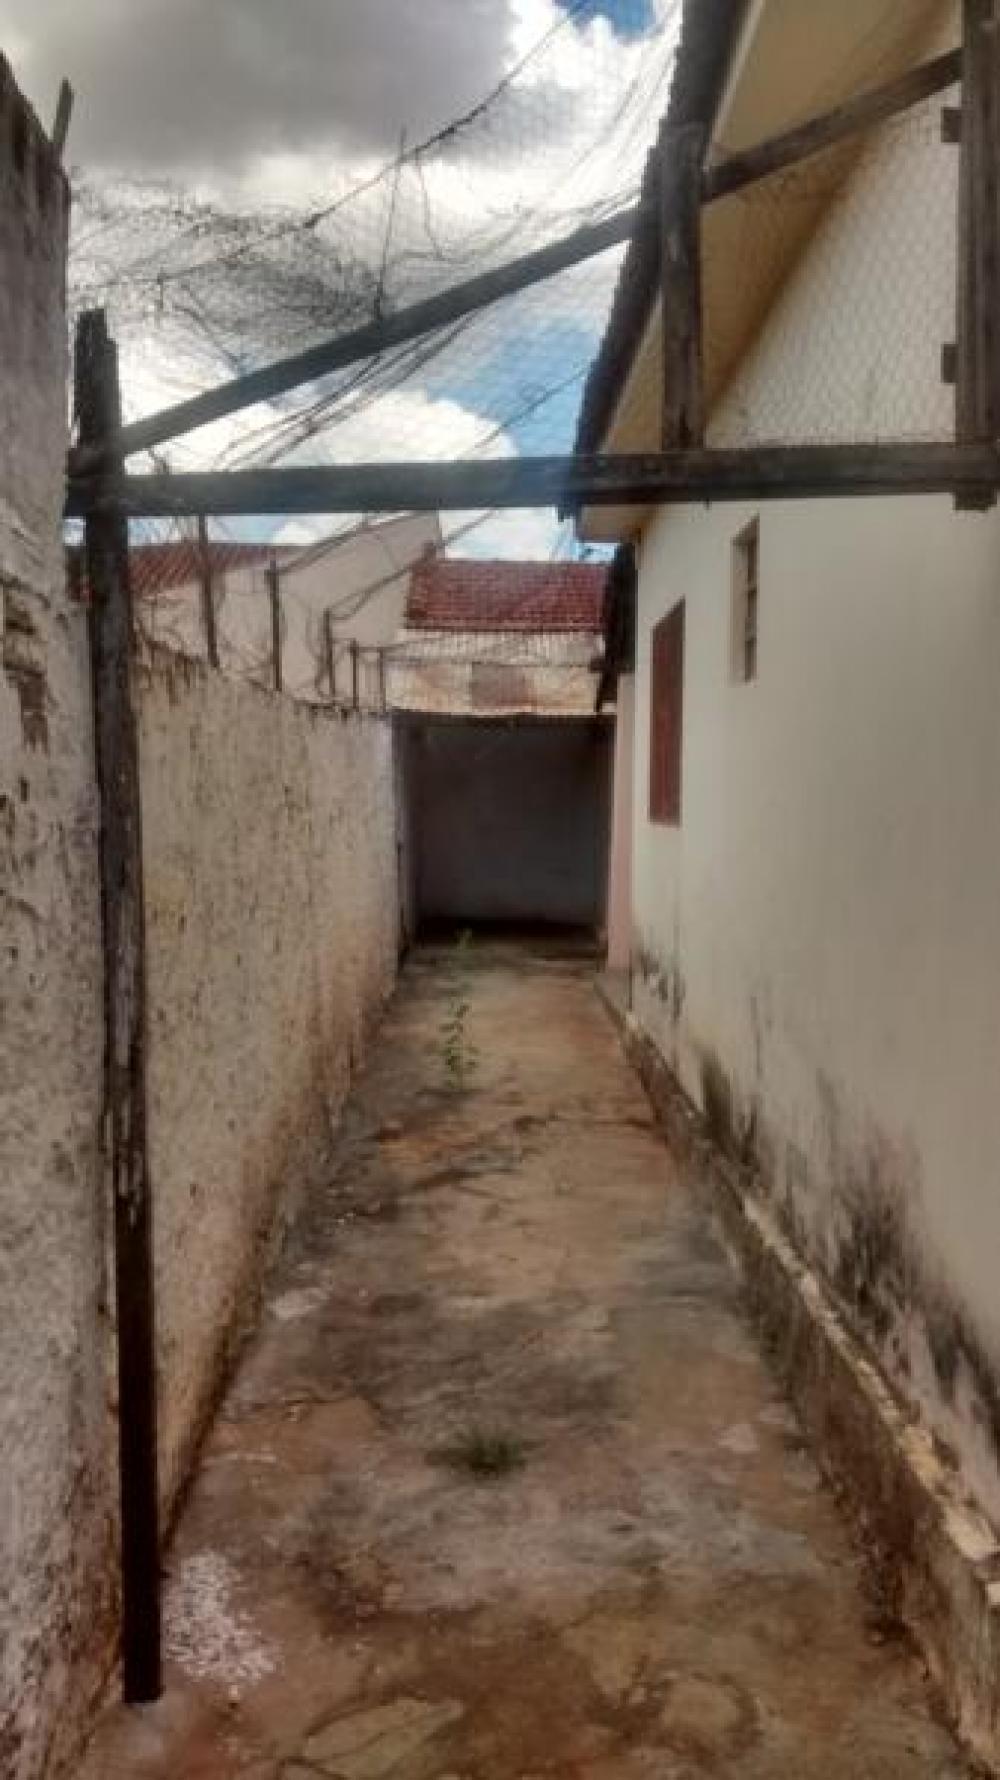 Comprar Casa / Padrão em São José do Rio Preto R$ 250.000,00 - Foto 16